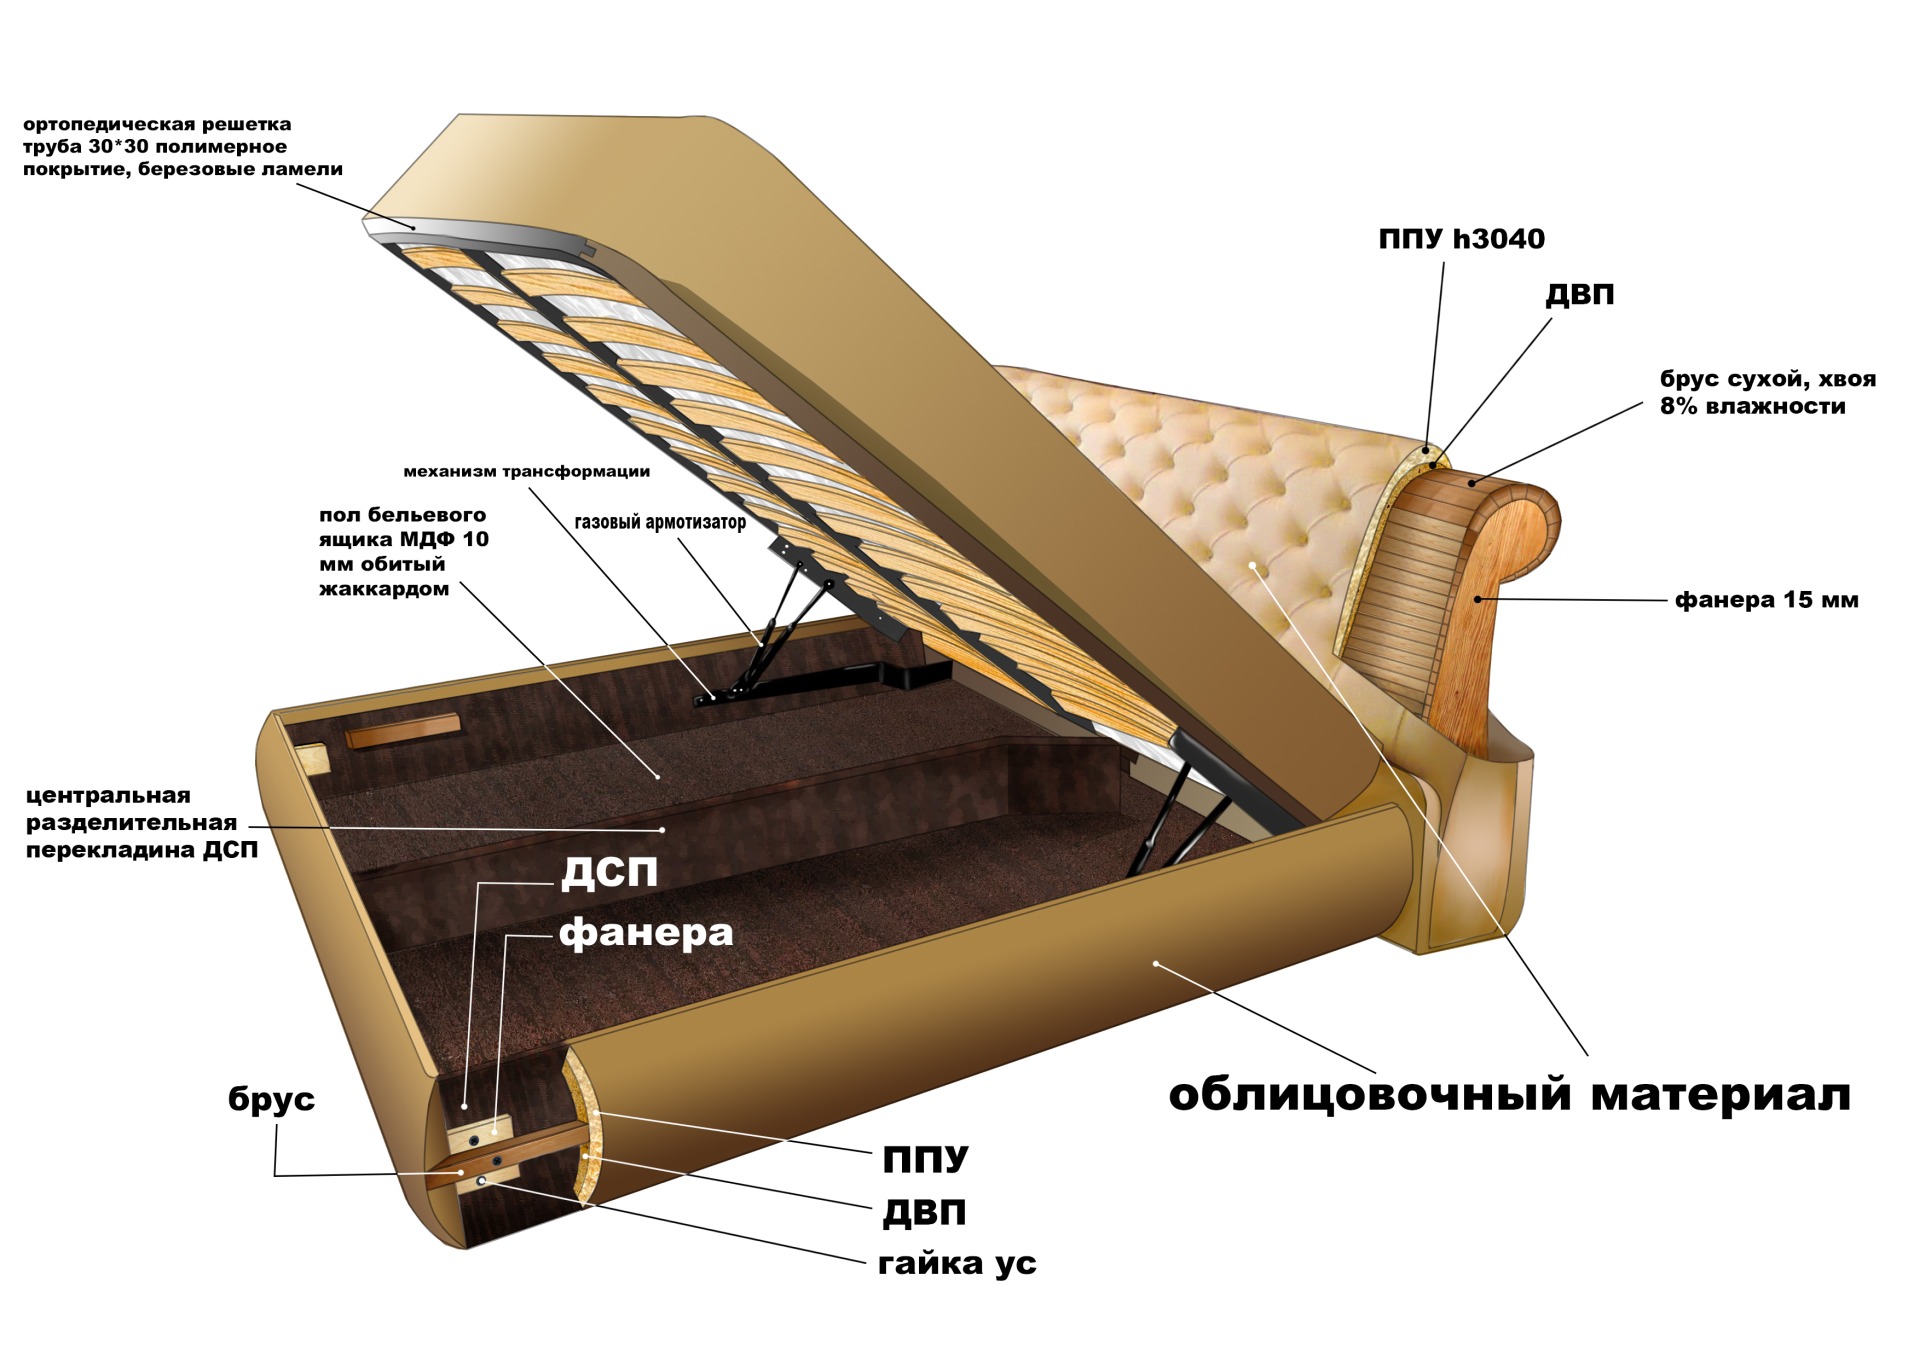 диван с подъемным механизмом подушек